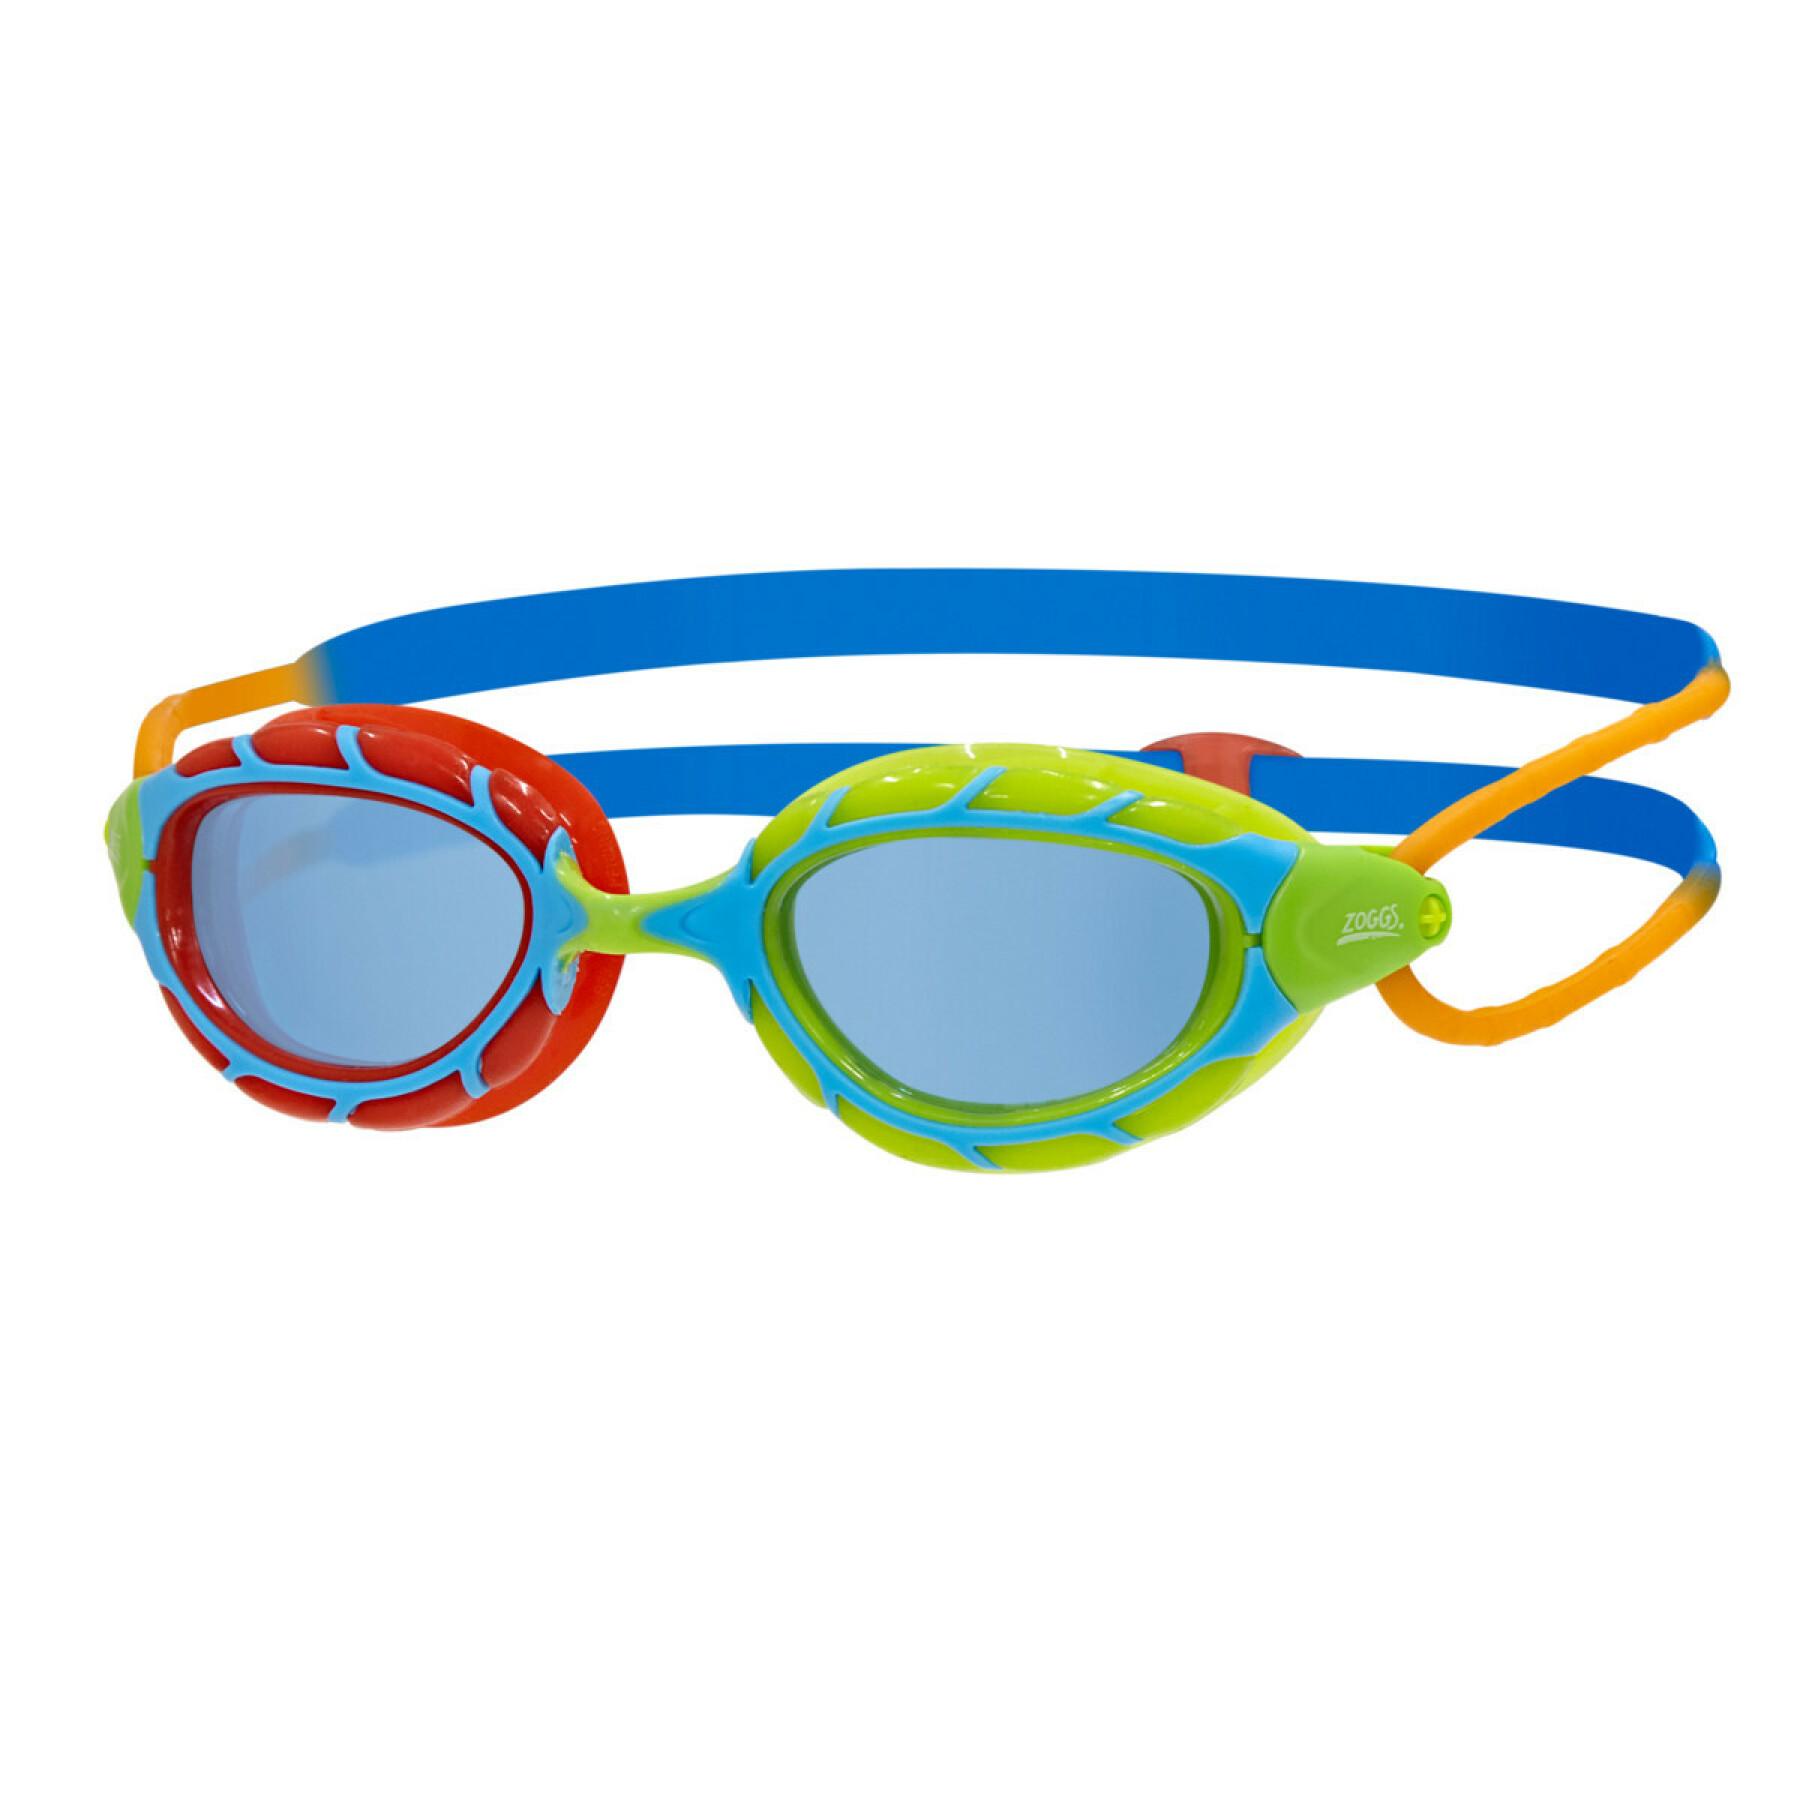 Children's swimming goggles Zoggs Predator